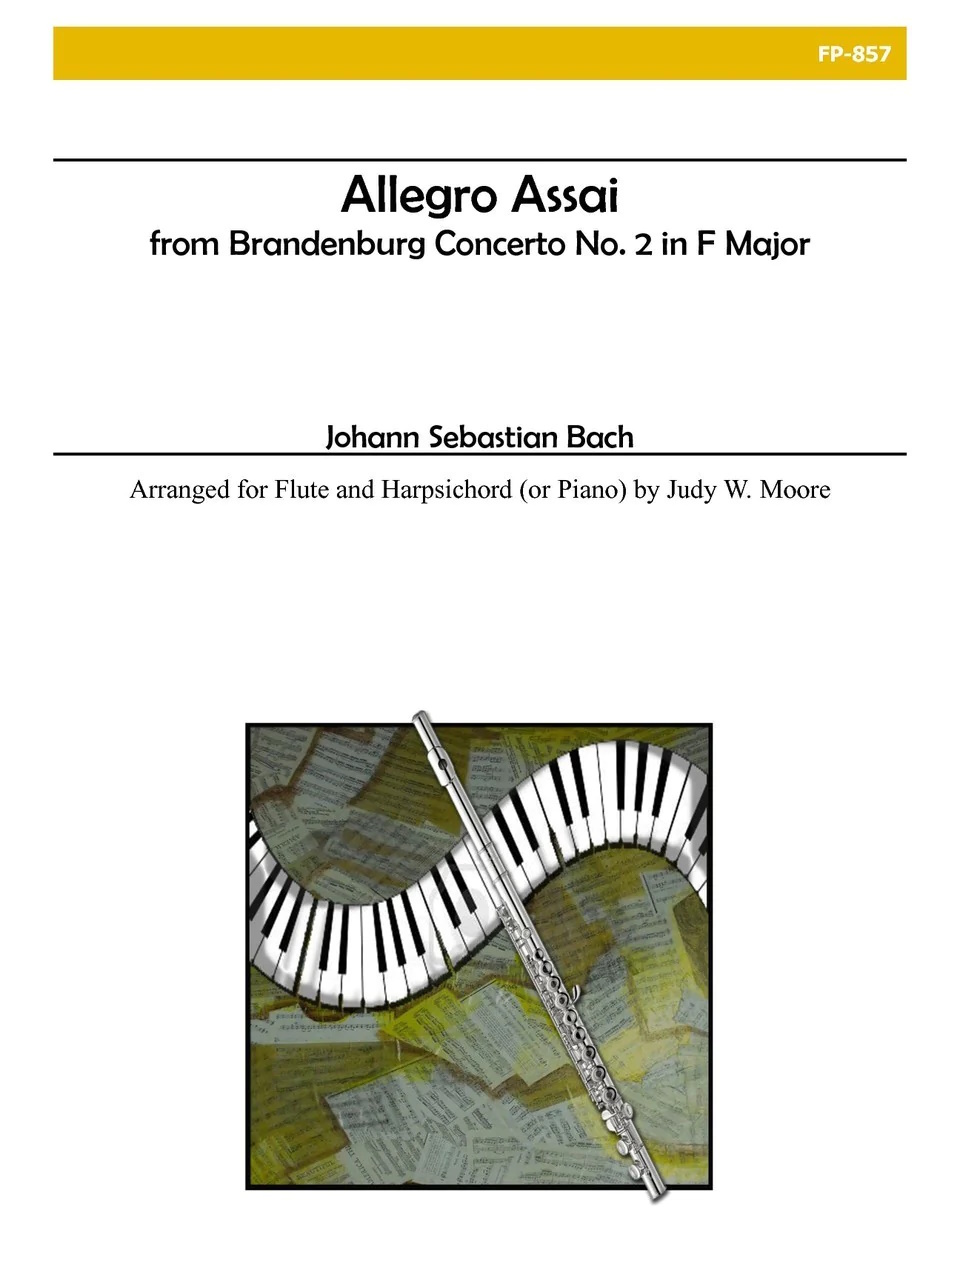 ALLEGRO ASSAI from Brandenburg Concerto No.2